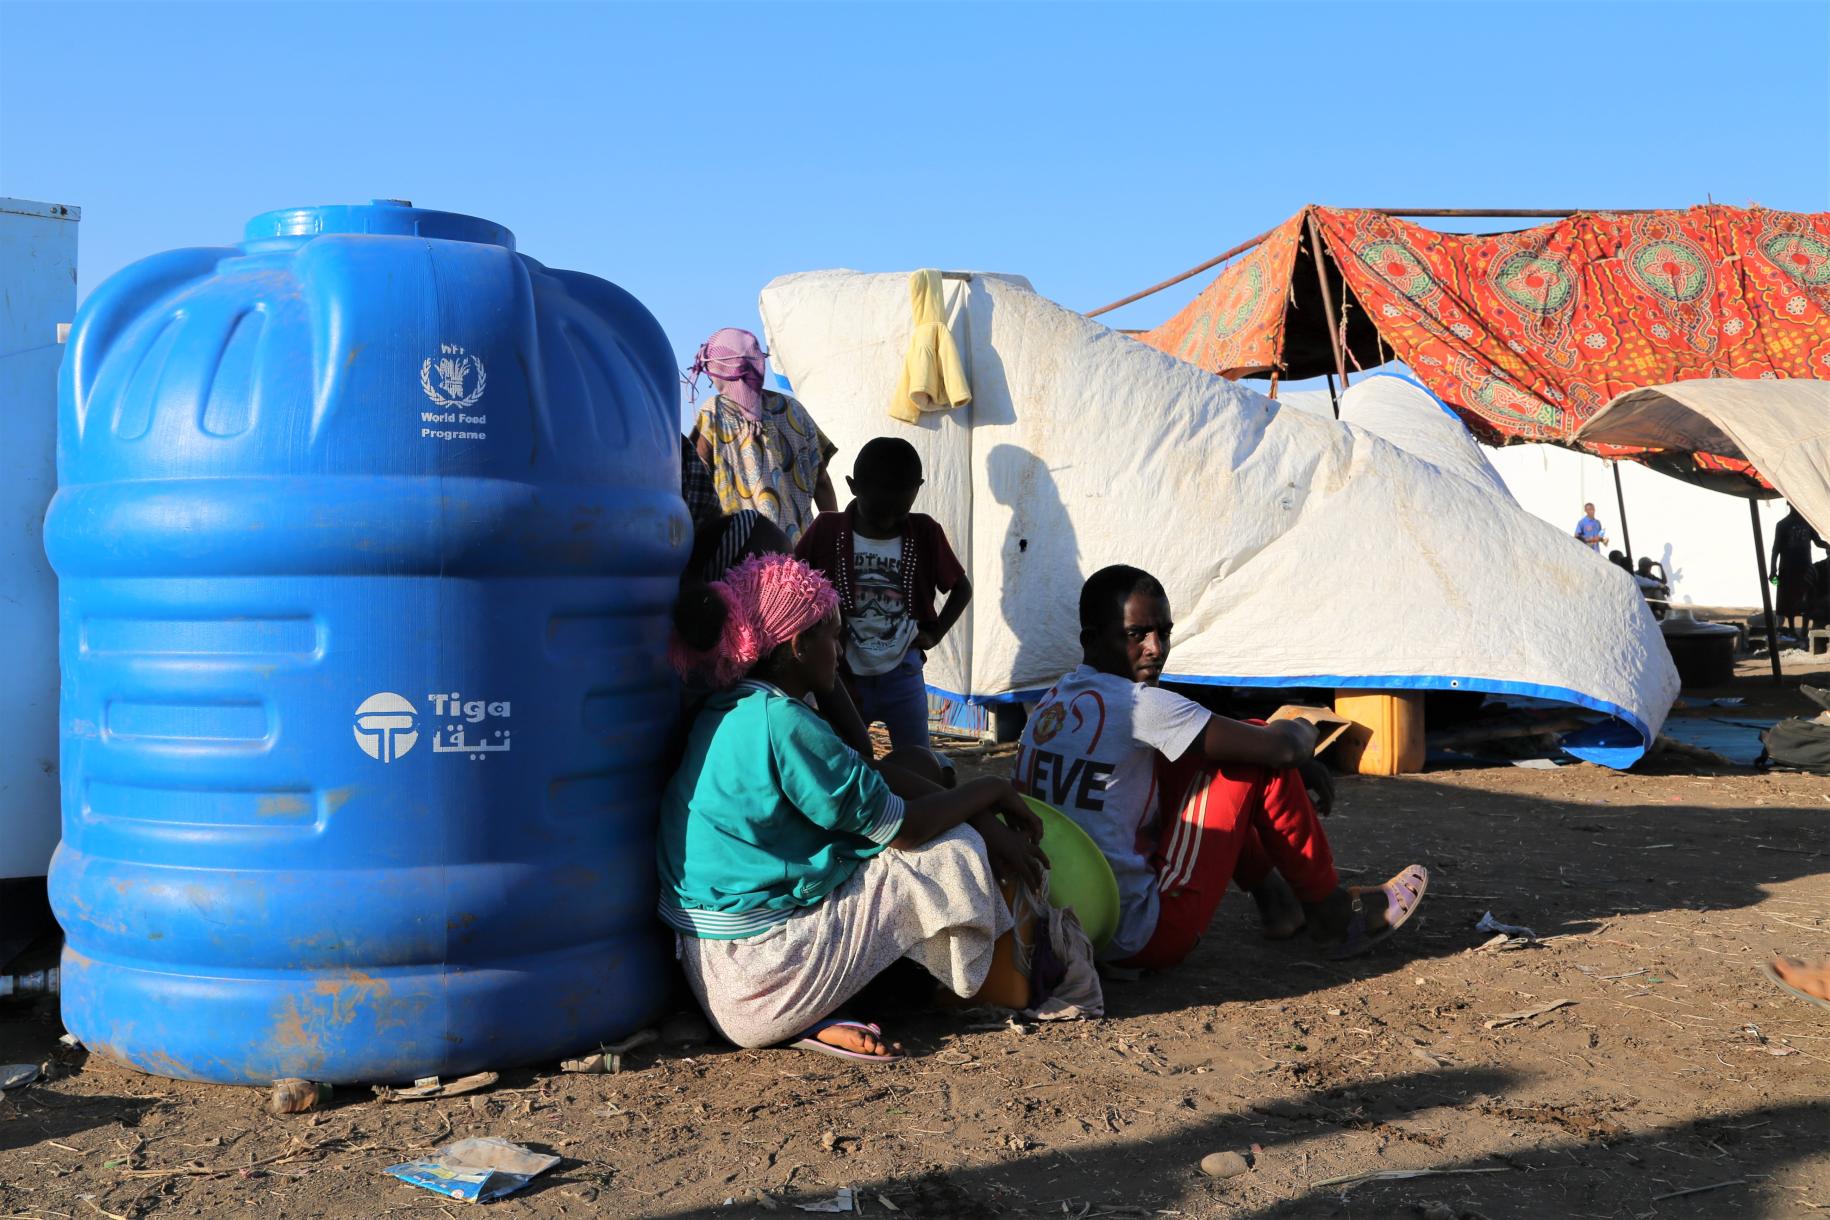 أشخاص يجلسون أمام وعاء أزرق كبير من الماء في المخيم.